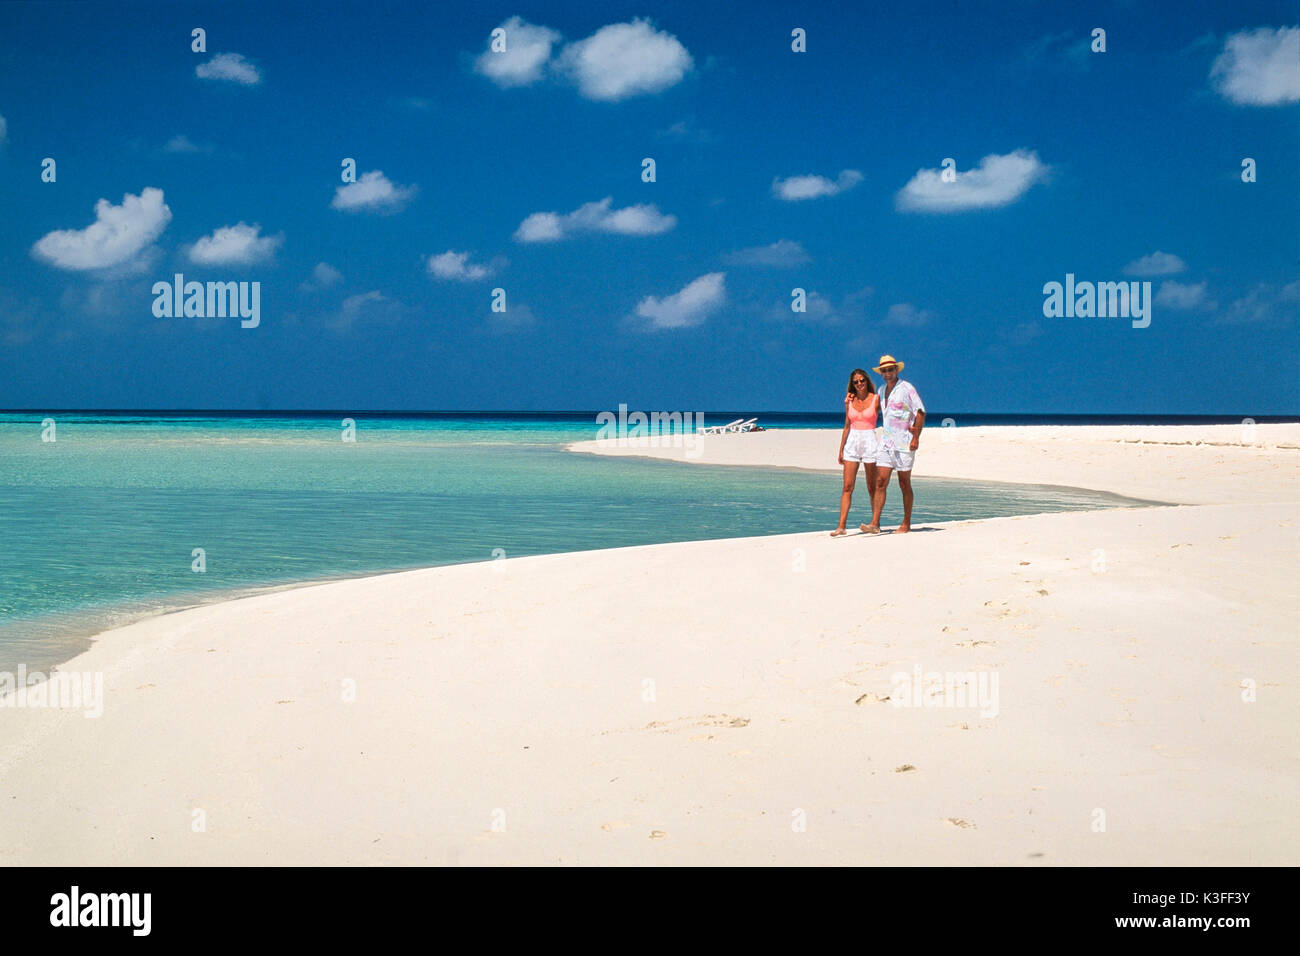 La pareja va a dar un paseo del brazo en una solitaria playa (Maldivas) Foto de stock